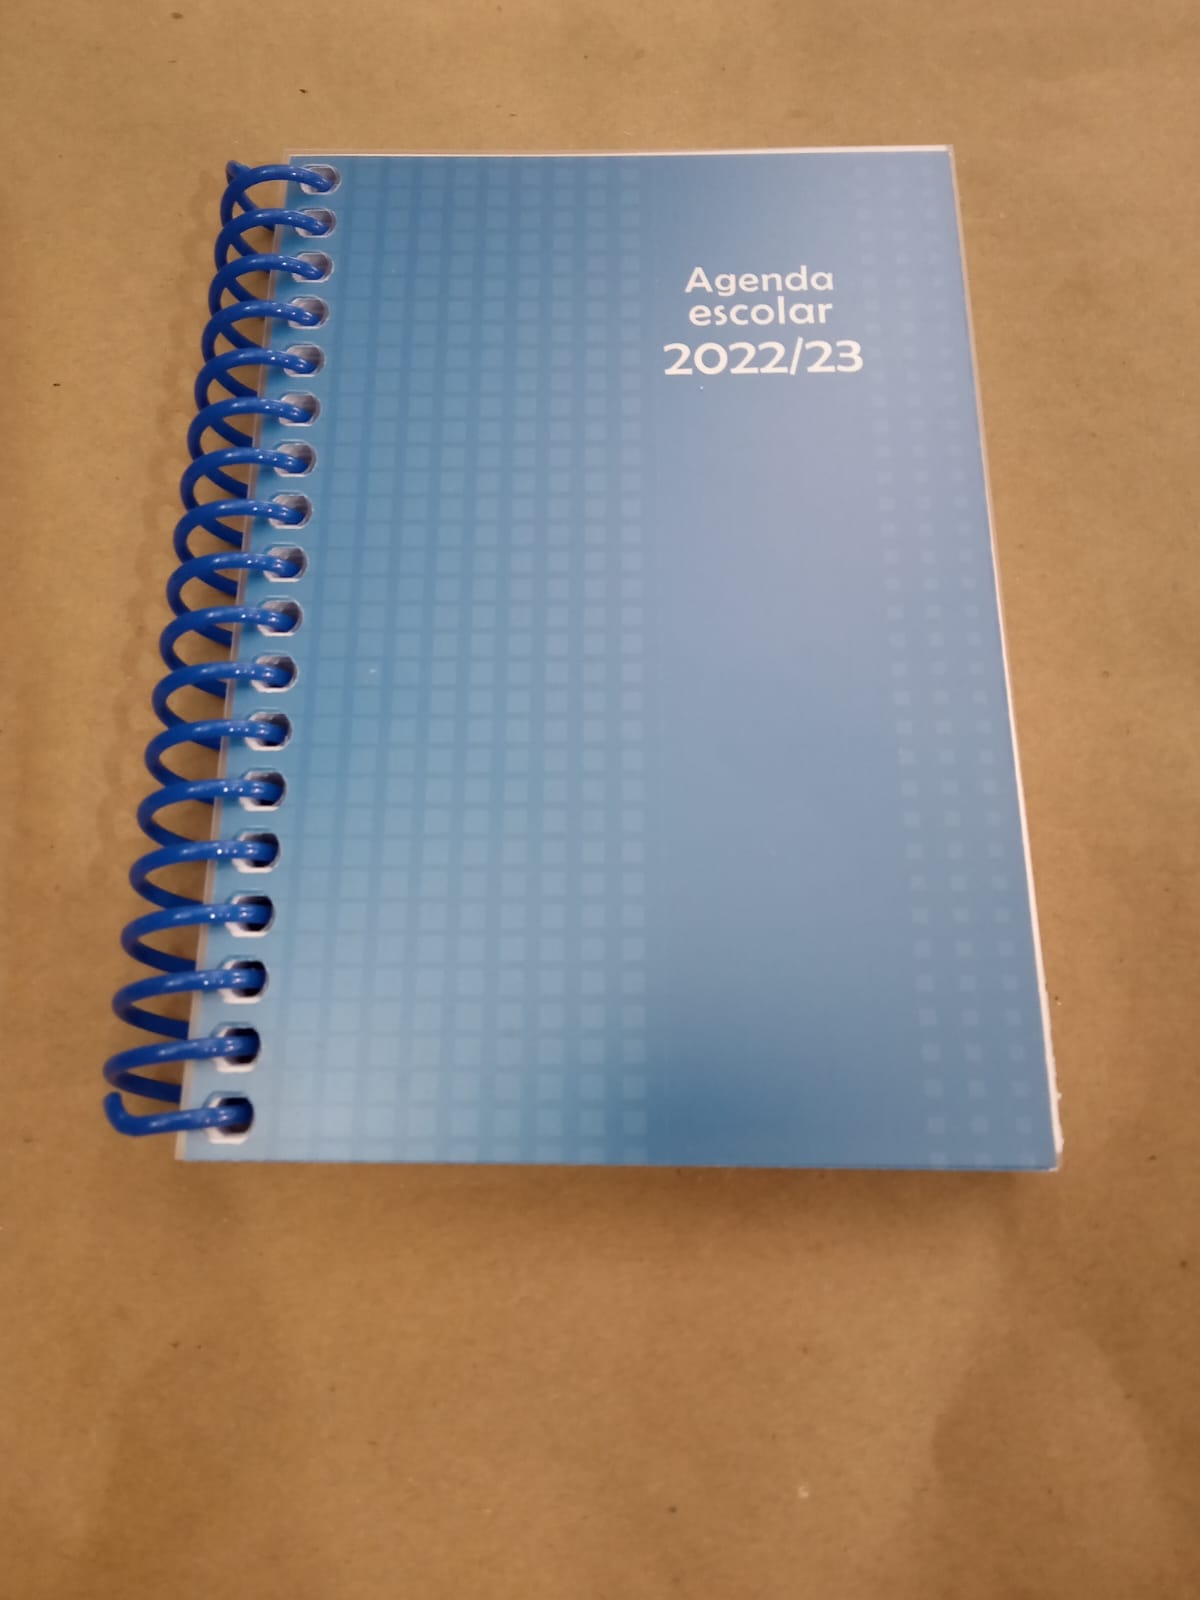 agenda para clase con pagina completa tamaño pequeño y tapas de plástico